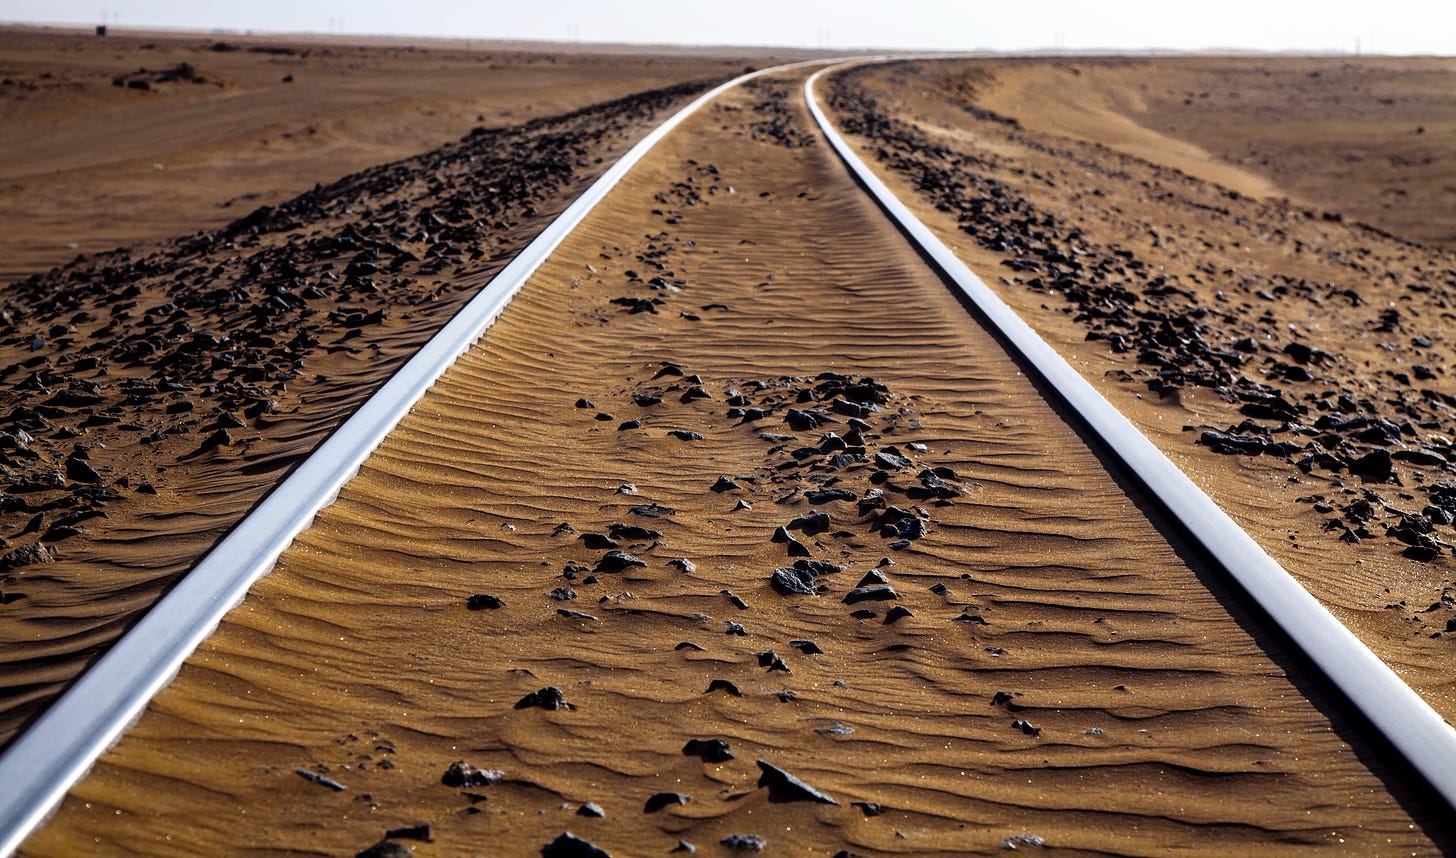 Train tracks in desert.